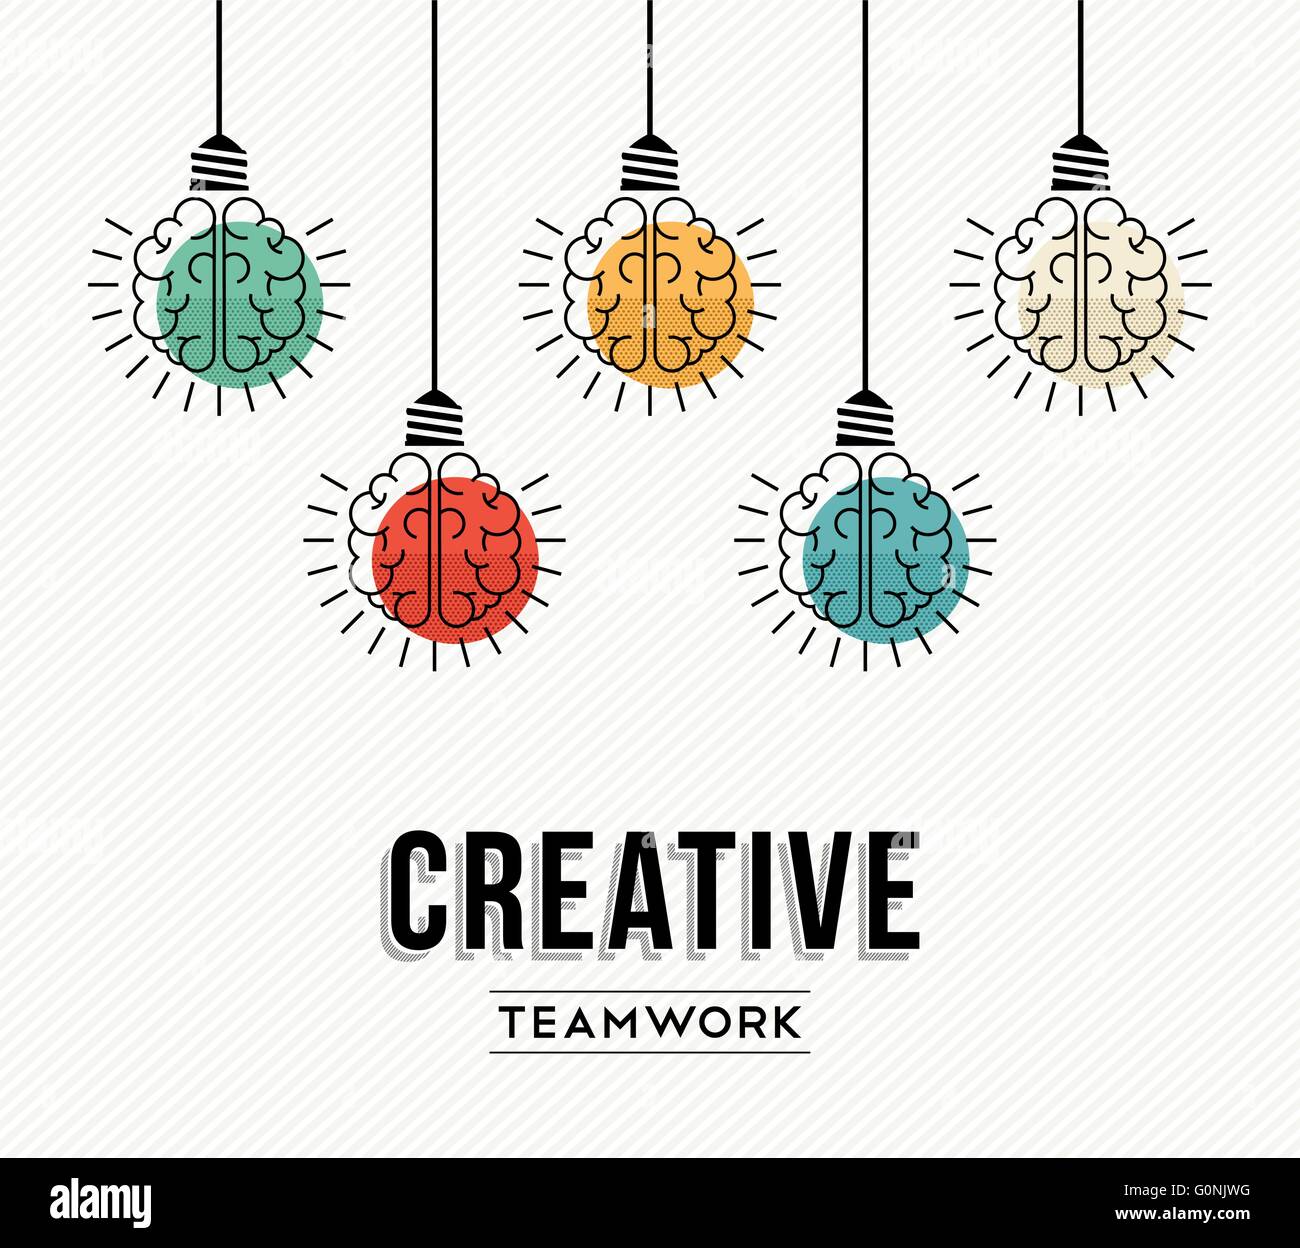 Lavoro di squadra creative design moderno con il cervello umano come colorata luce lampada, il successo nel concetto di business. EPS10 vettore. Illustrazione Vettoriale